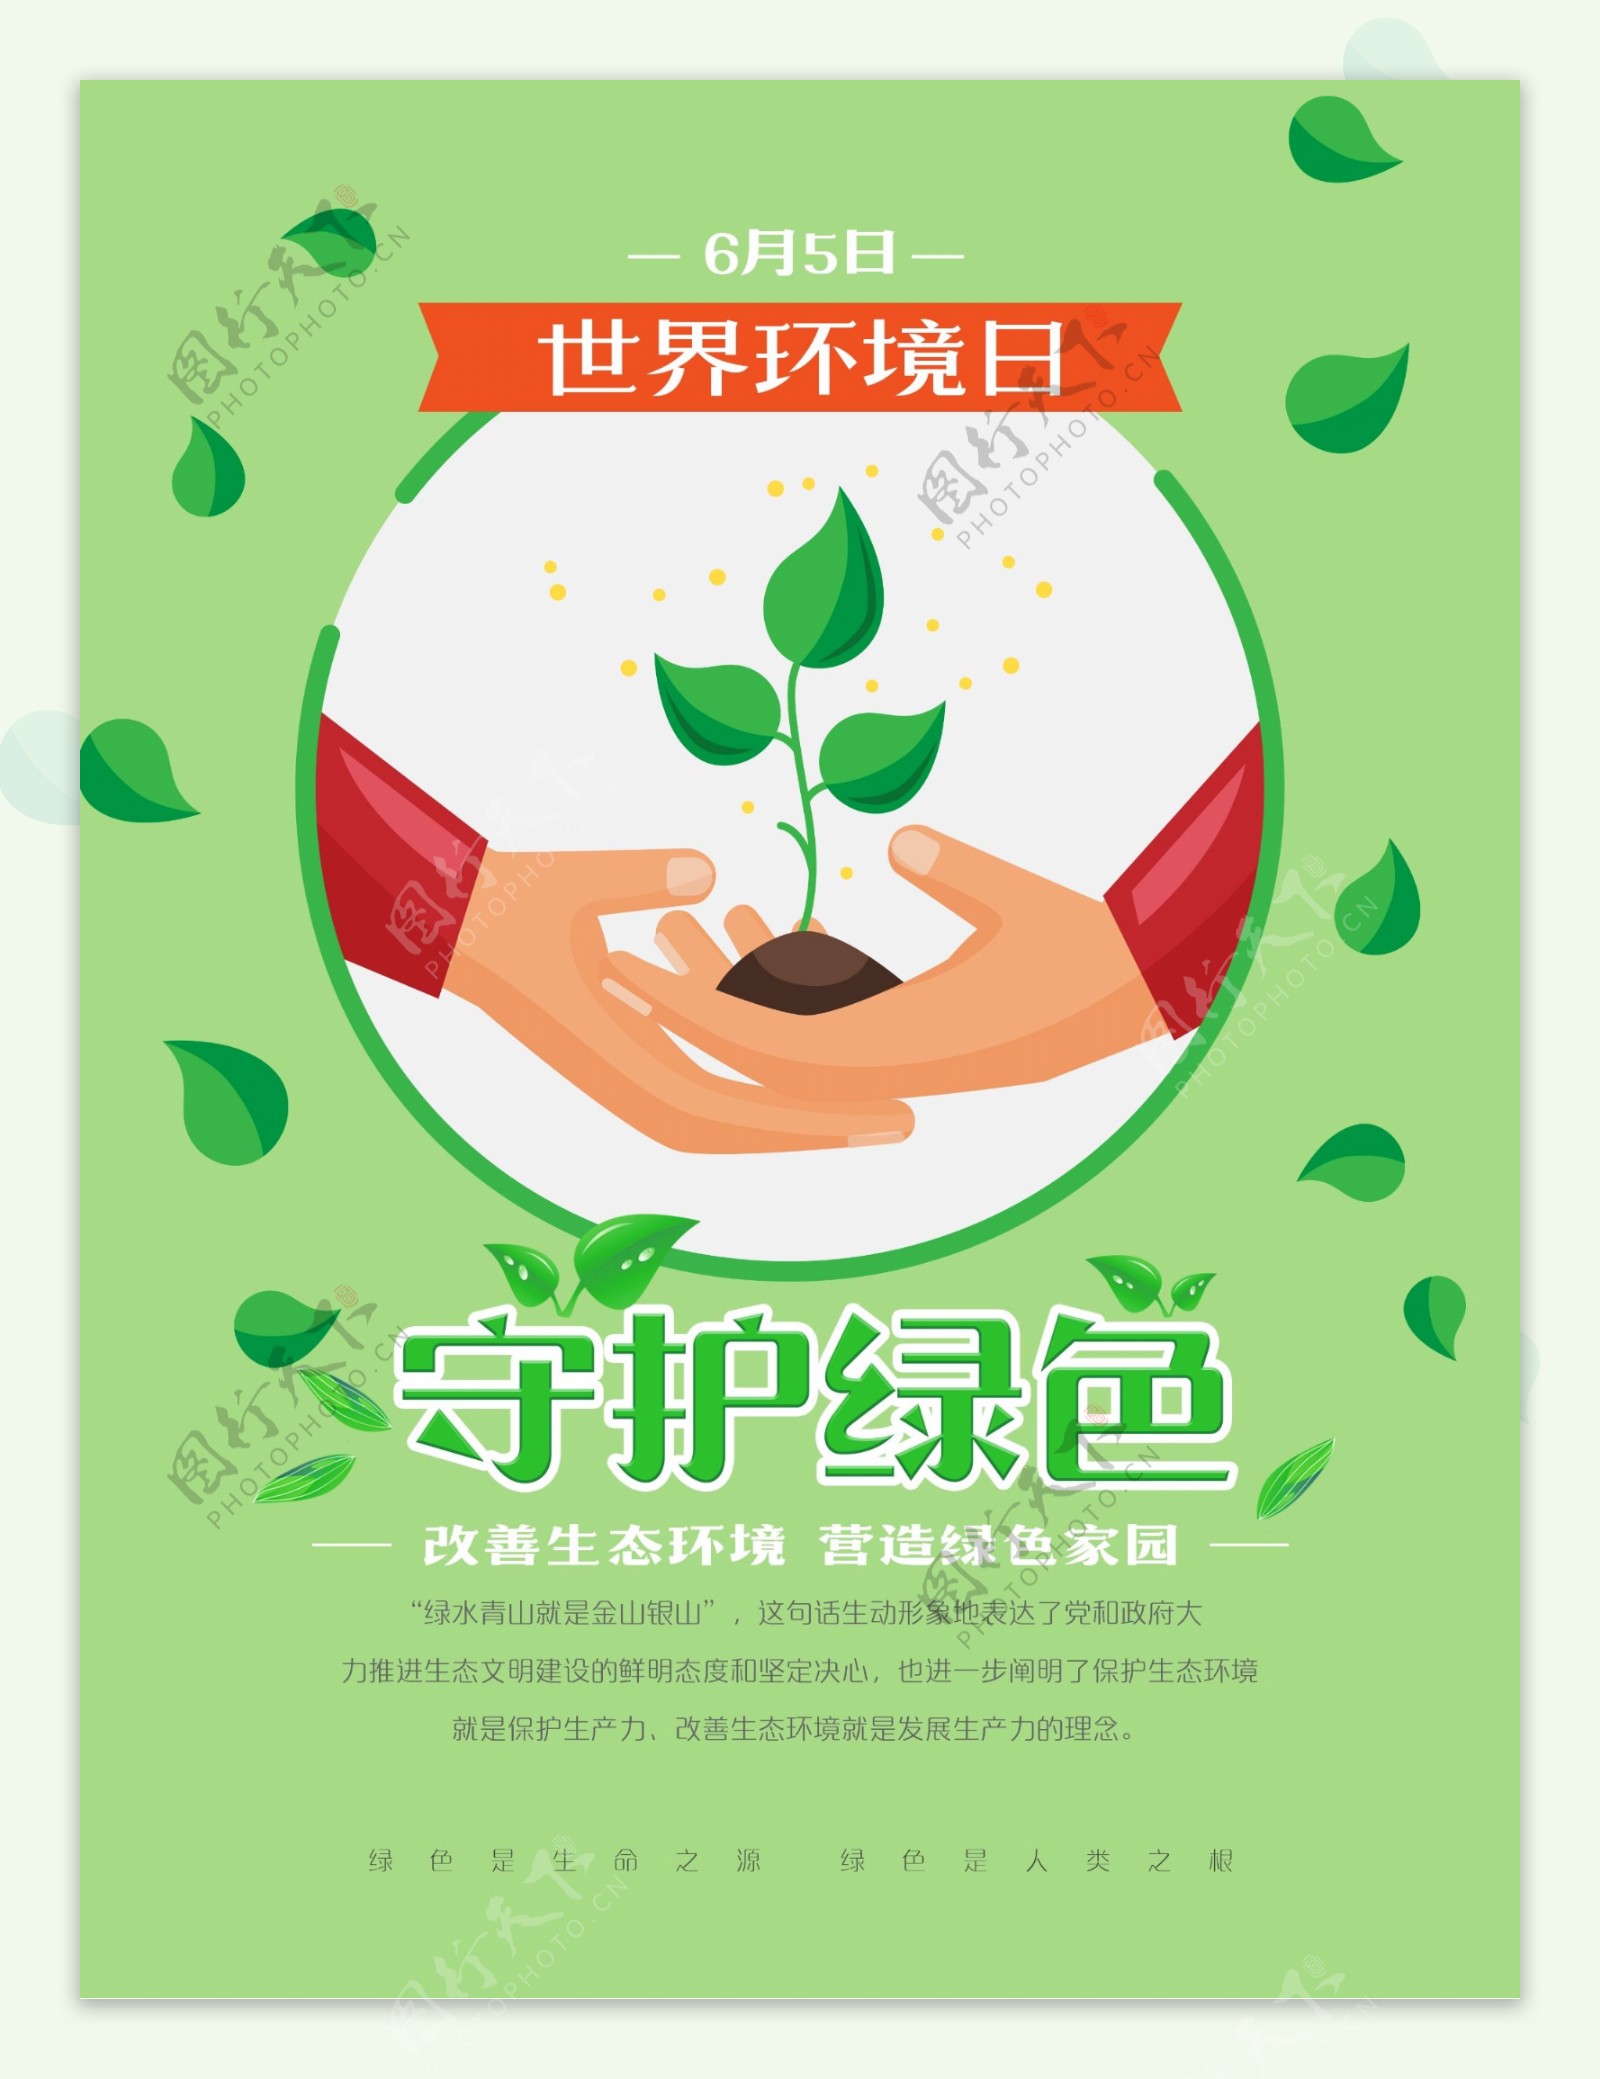 世界环境日守护绿色环保宣传海报